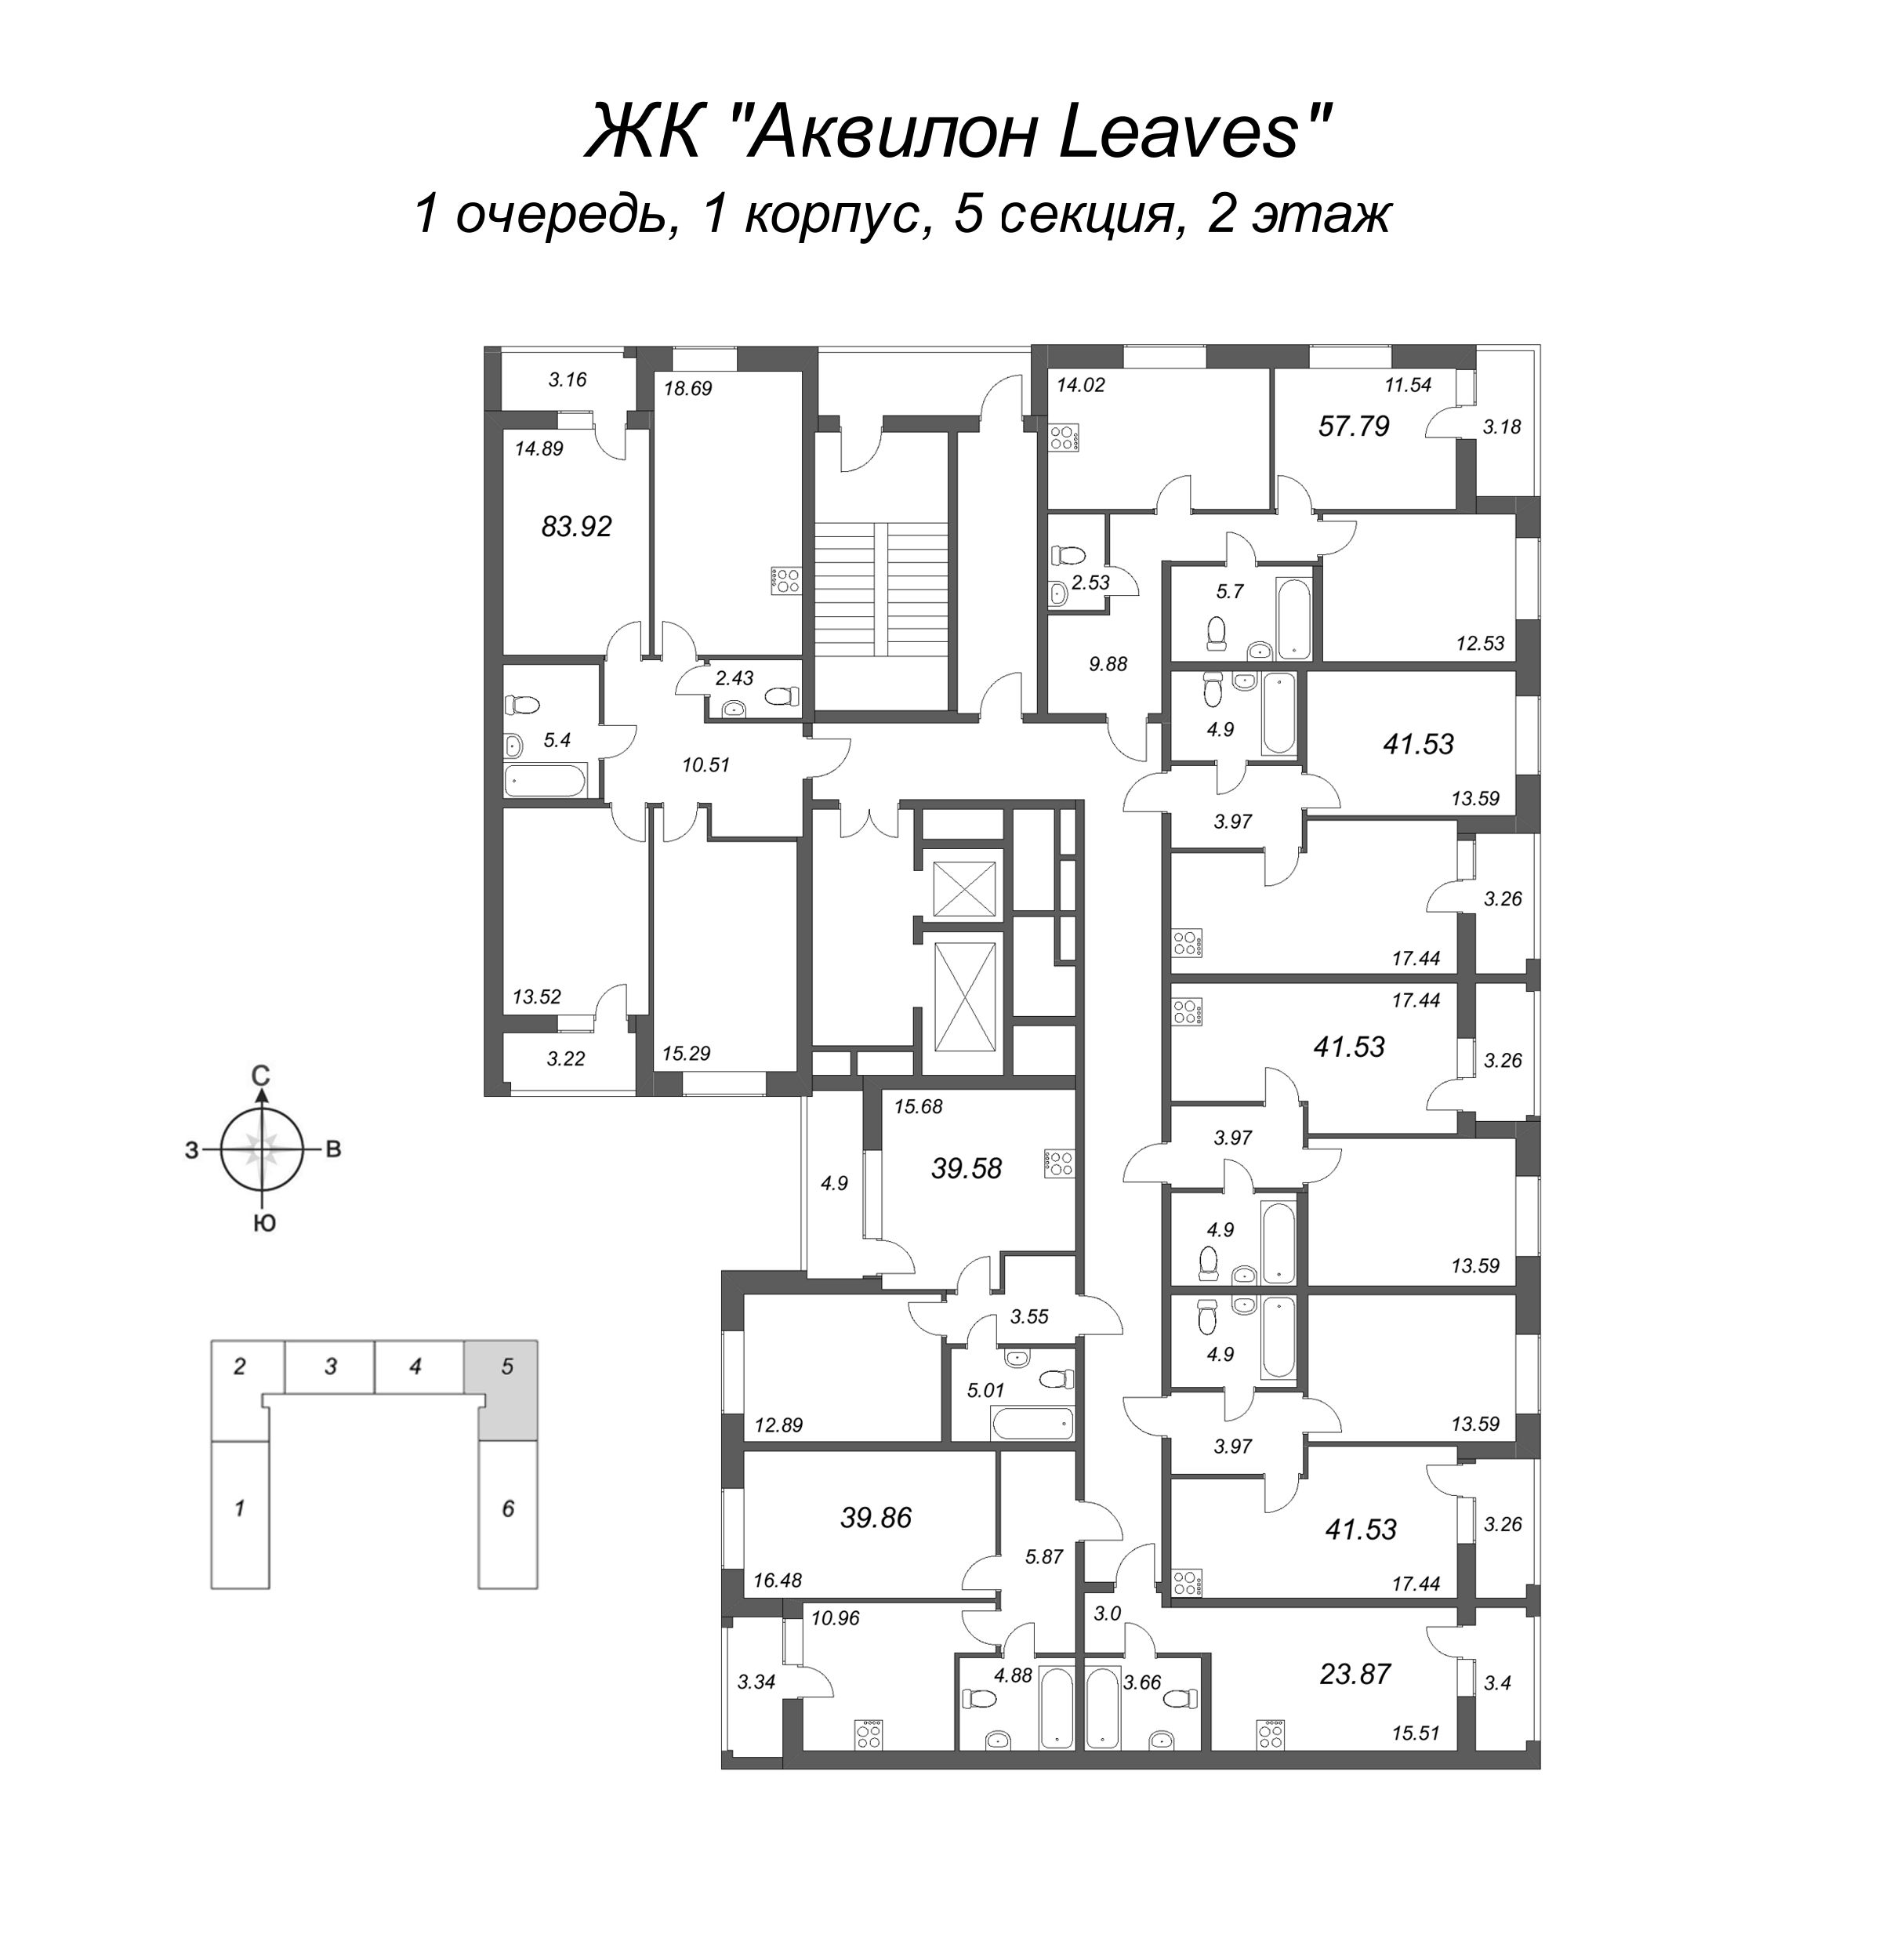 2-комнатная (Евро) квартира, 39.58 м² в ЖК "Аквилон Leaves" - планировка этажа